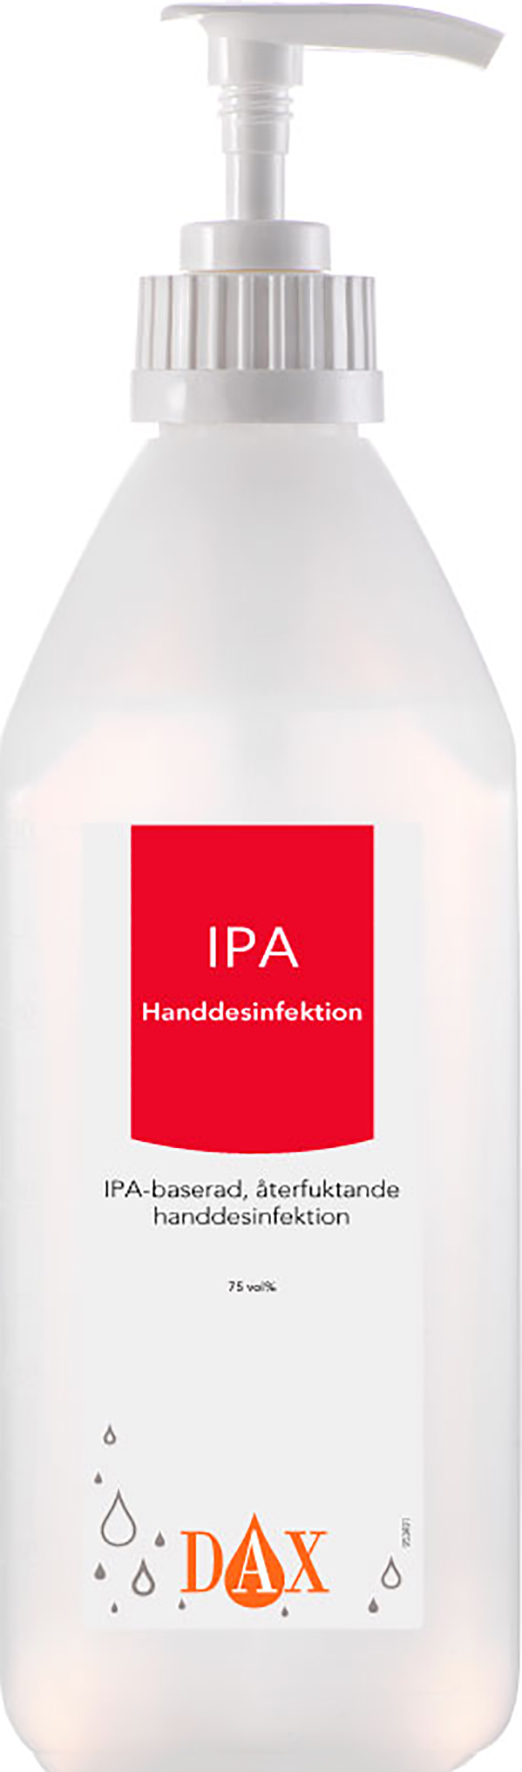 [2256219] Handdesinfektion IPA pump600ml